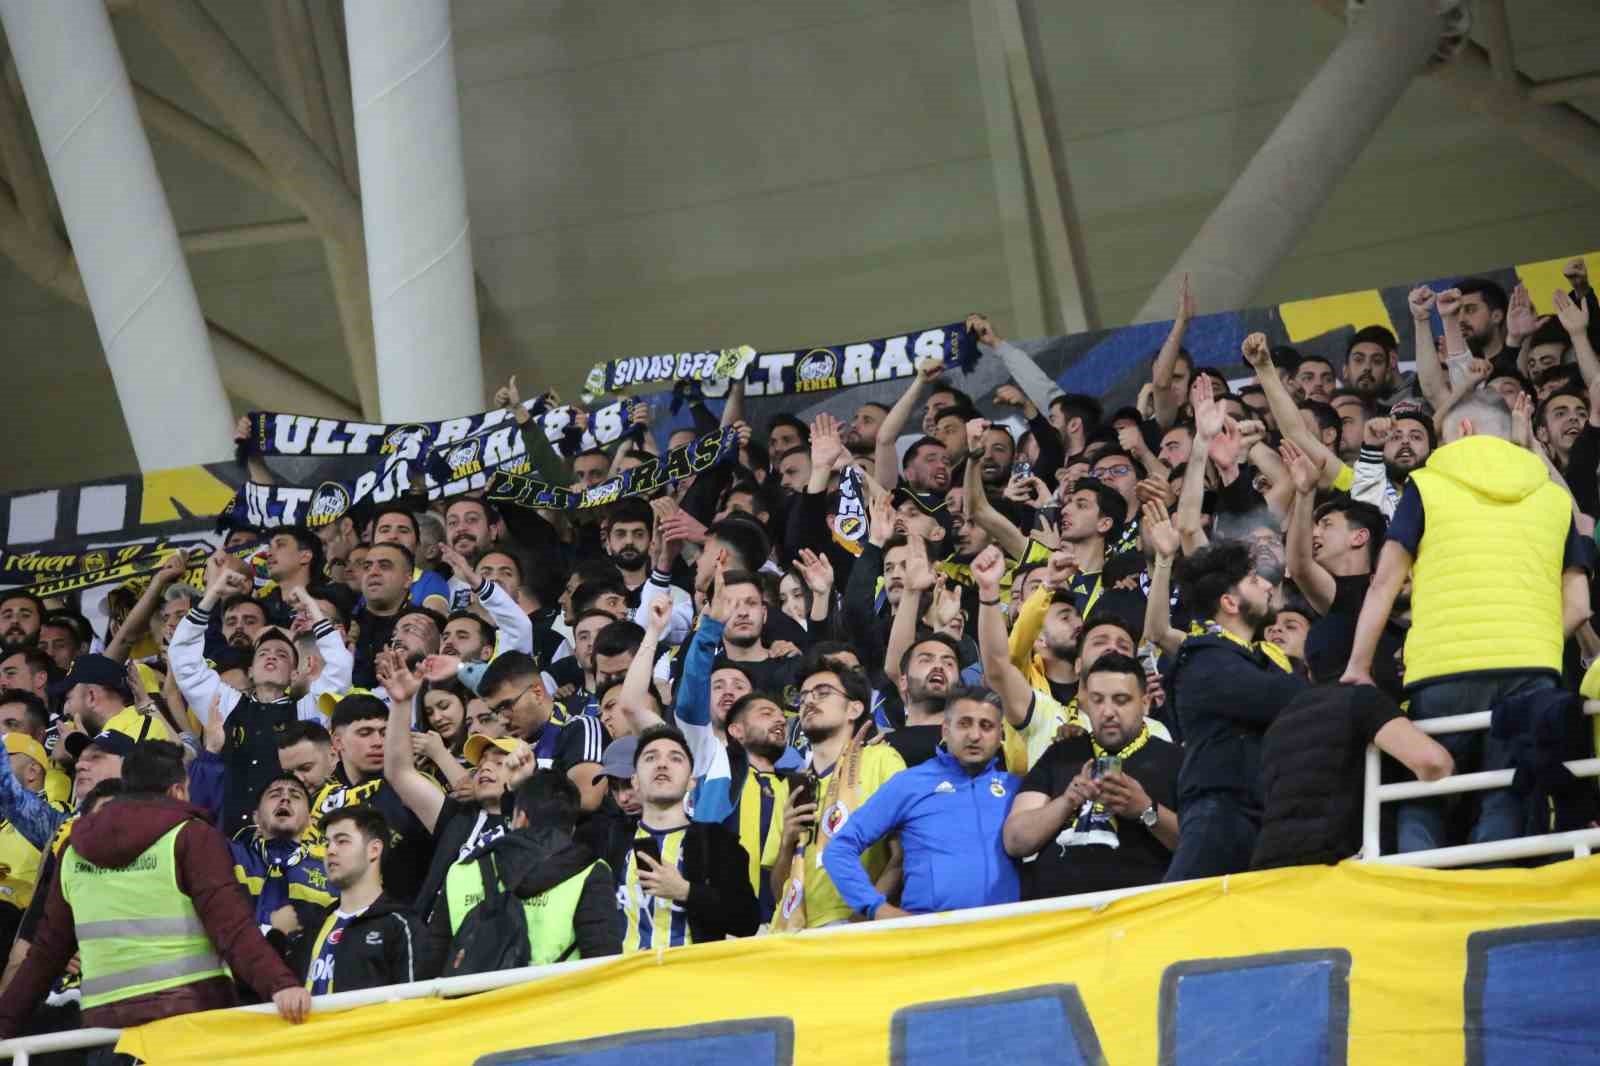 Fenerbahçeli taraftarlar takımını yalnız bırakmadı
